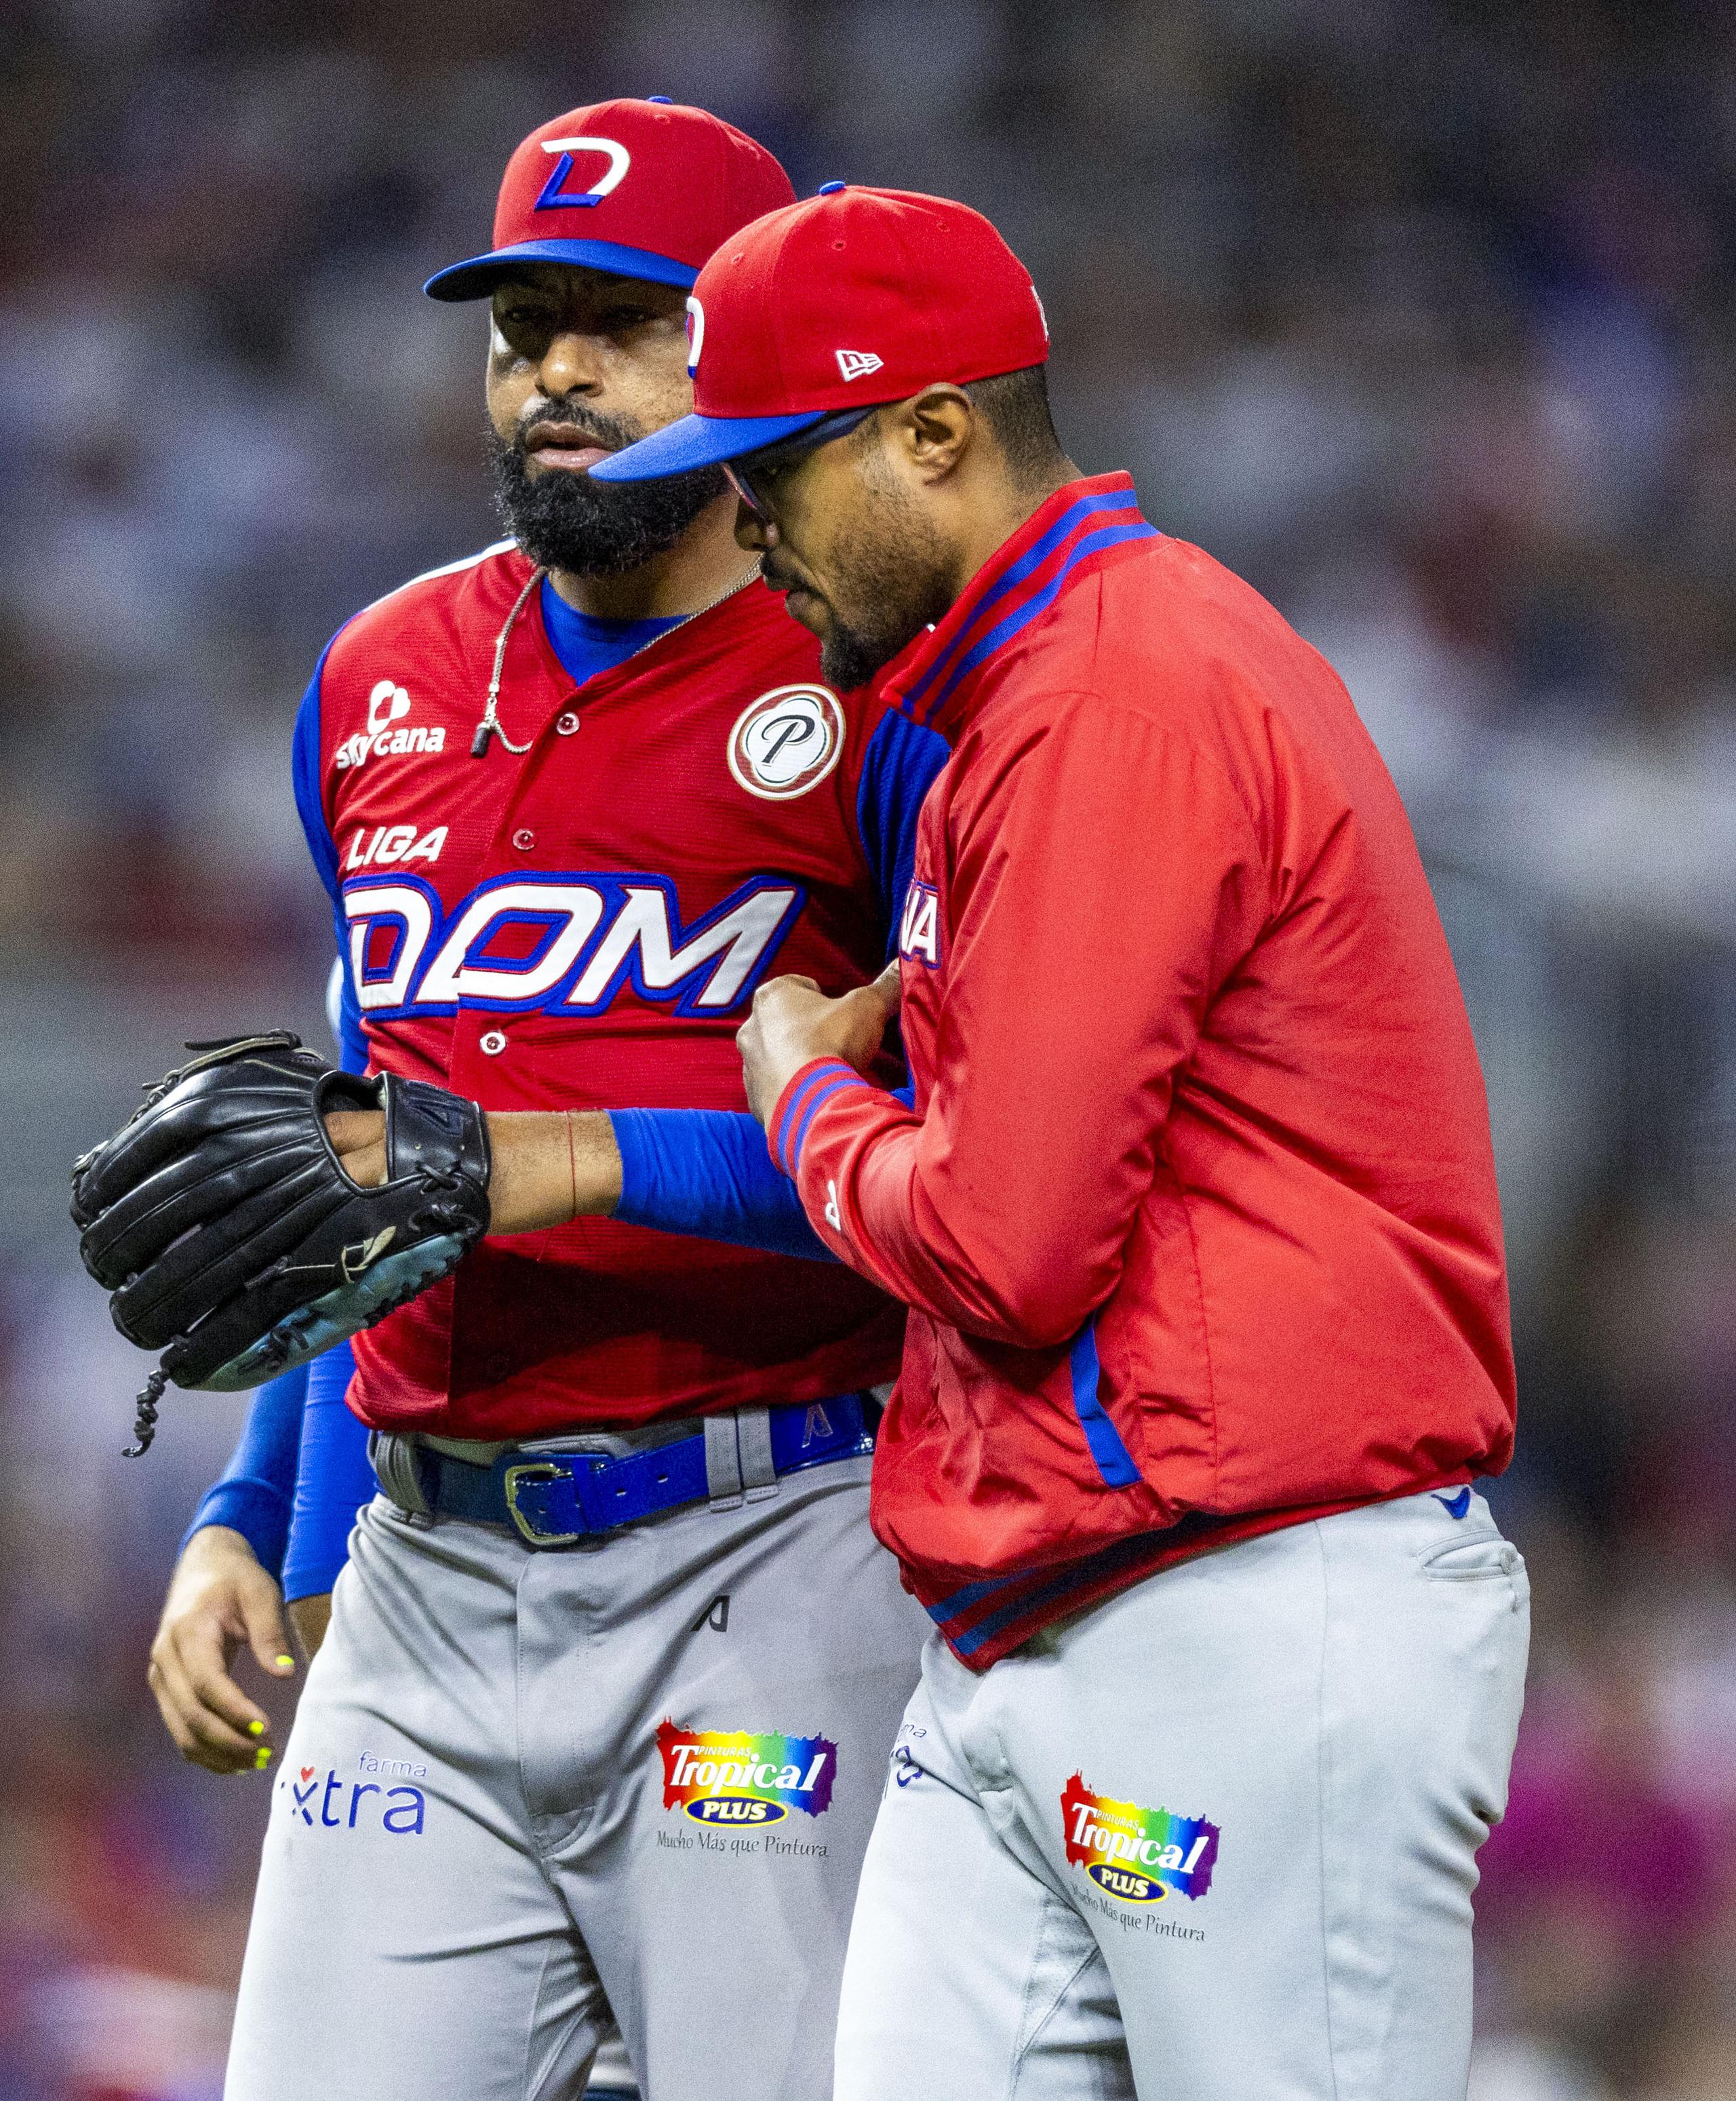 Gilbert Gómez, dirigente de los Tigres del Licey, salió a controlar a su lanzador Cesar Valdez quien se molesto con el umpire durante el juego contra los Criollos de Puerto Rico en la Serie del Caribe.